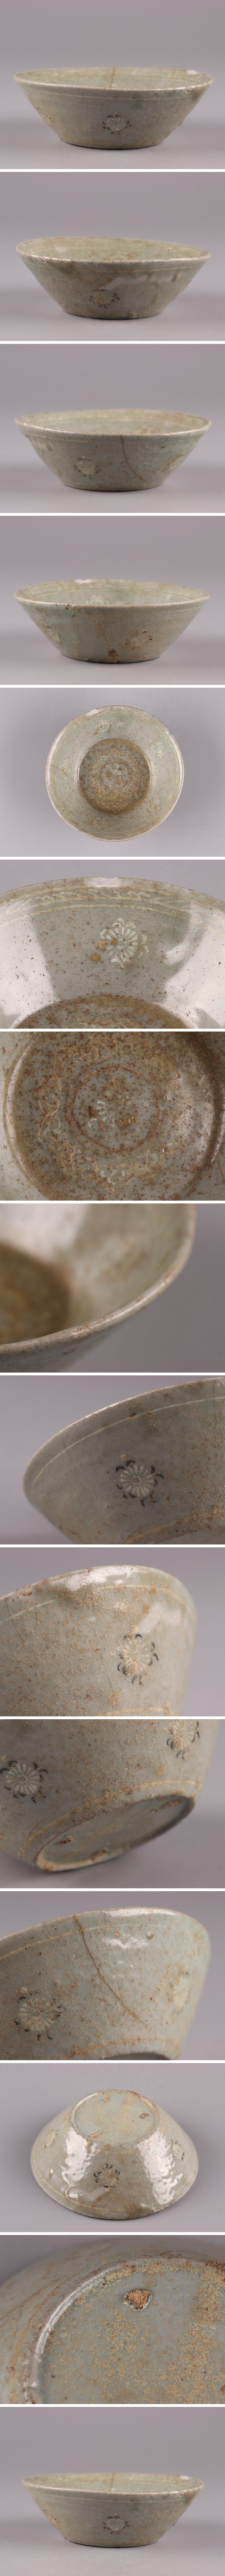 お得好評古美術 朝鮮古陶磁器 高麗青磁 白黒象嵌 皿 時代物 極上品 初だし品 4410 高麗